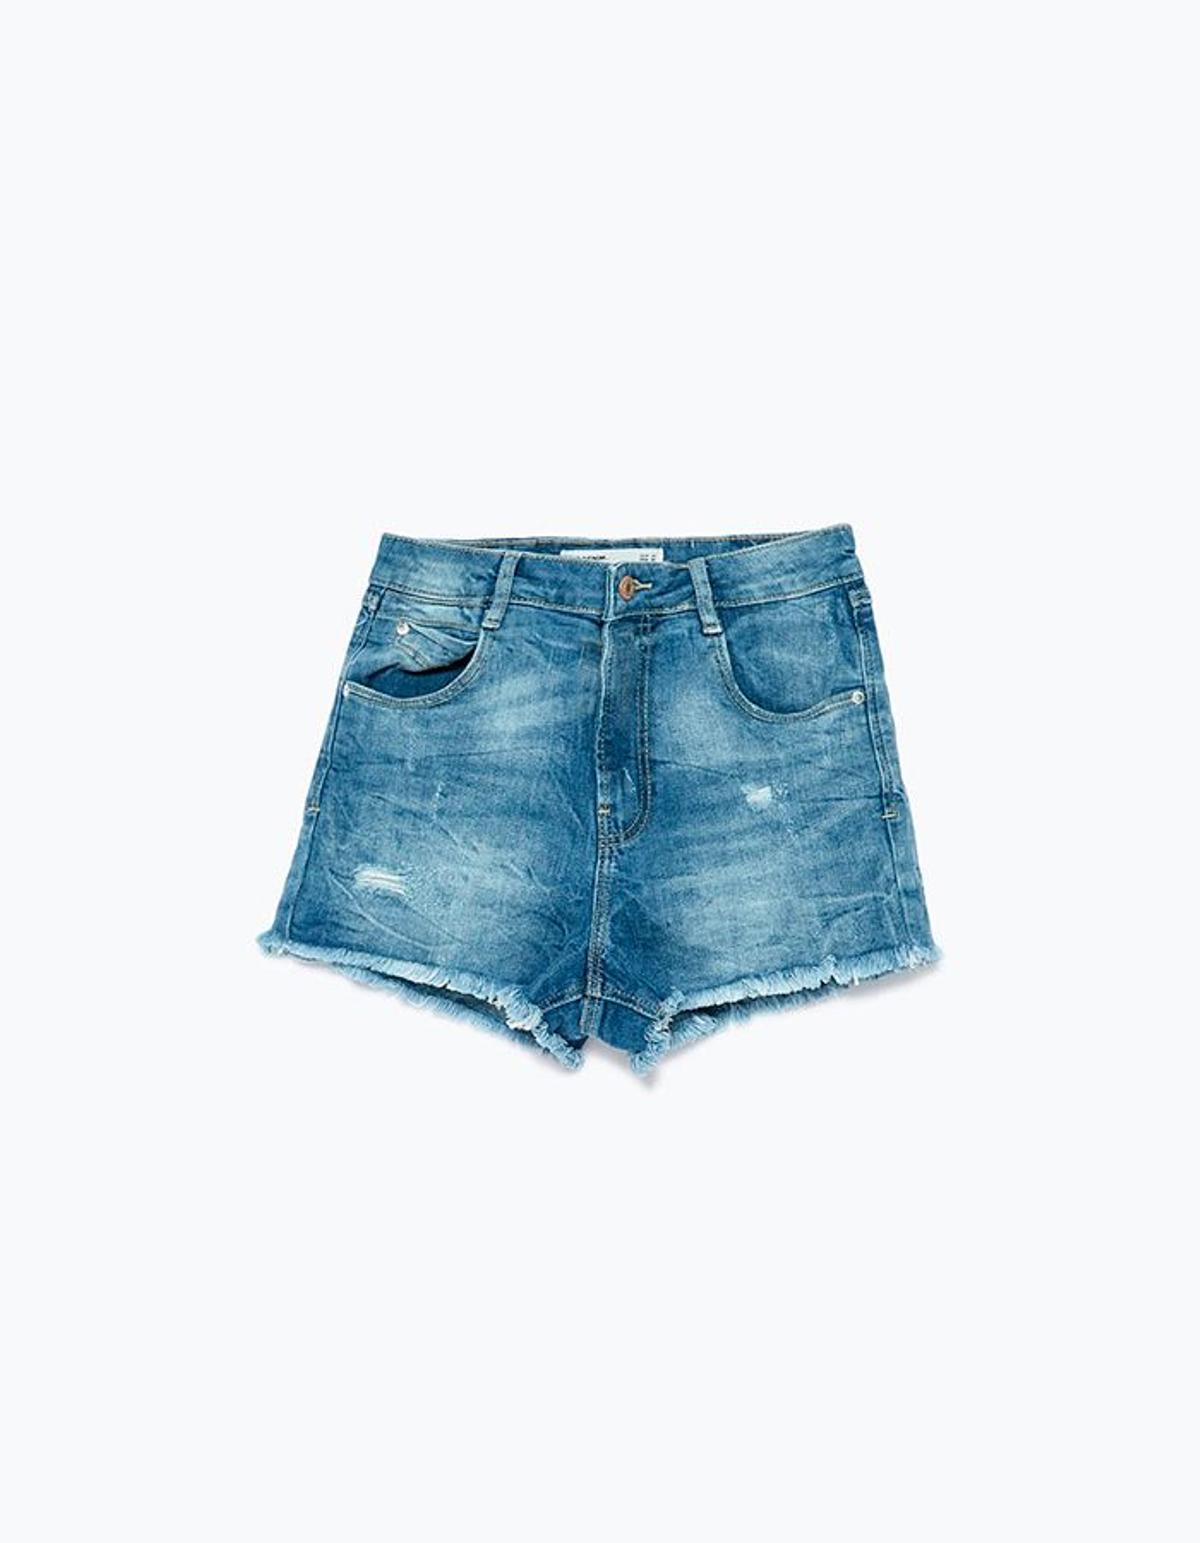 Shorts denim de Zara (19,95€)